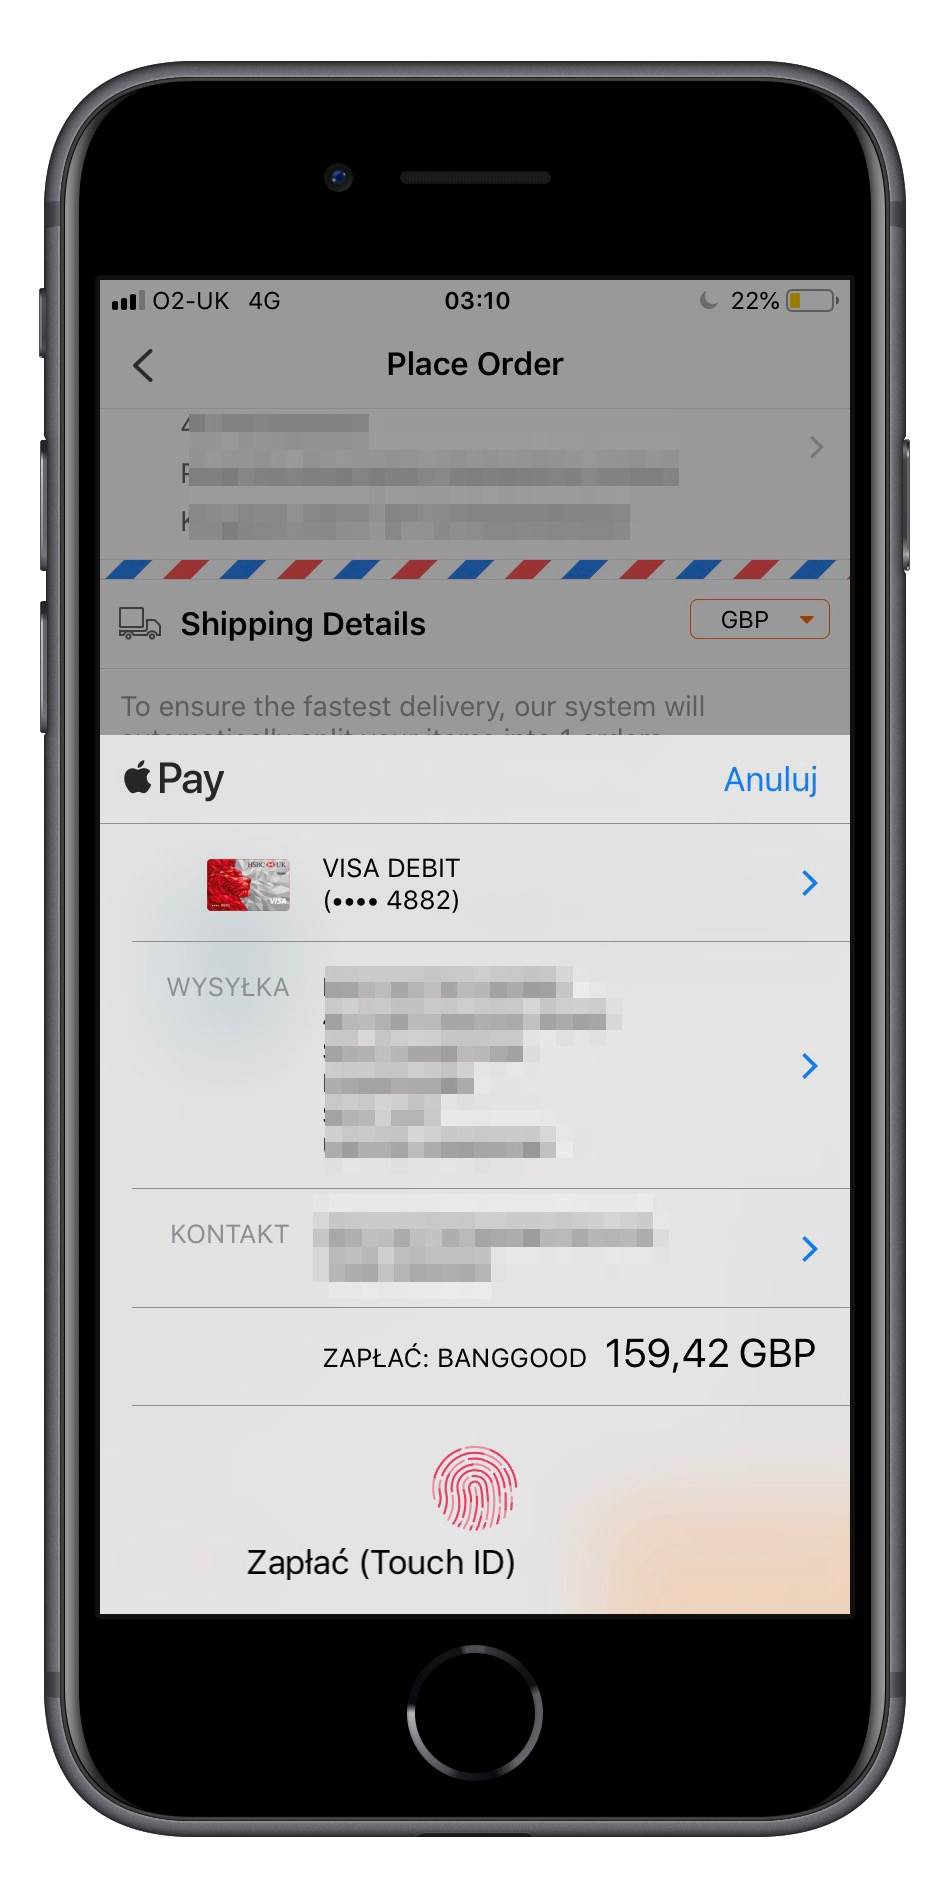 Aplikacja mobilna Banggod pozwala płacić za zakupy za pomocą Apple Pay ciekawostki   Długo zastanawiałem się nad zakupem Xiaomi Mi A2 Lite, żebym mógł sprawdzać nowości dostępne w Androidzie. IMG 2899